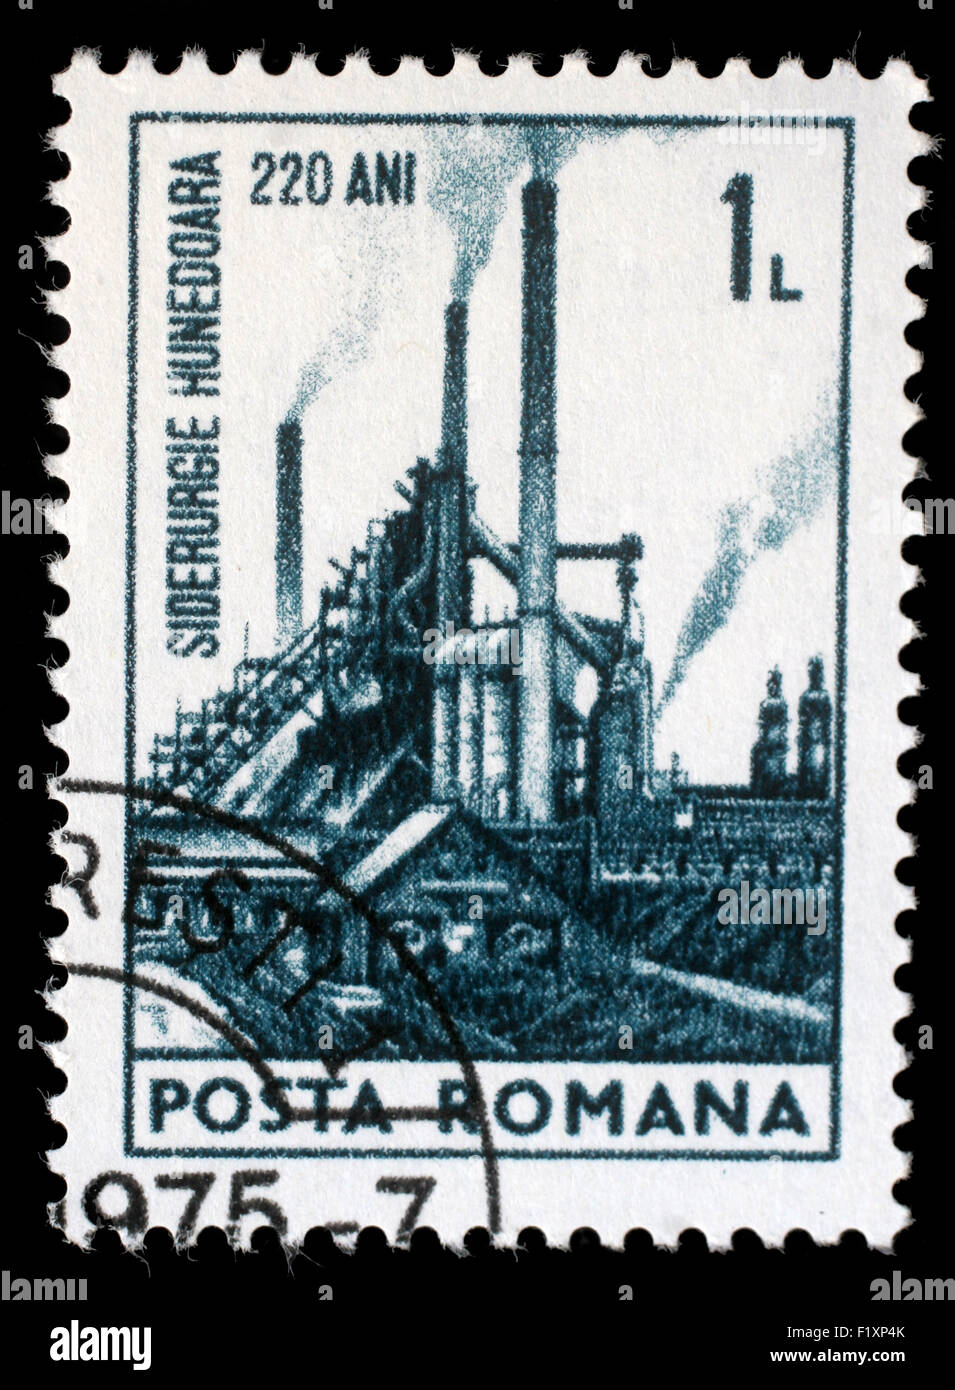 Stempel in Rumänien zeigt arbeitet 220. Jahrestag von Hunedoara Eisen und Stahl, ca. 1974 gedruckt. Stockfoto